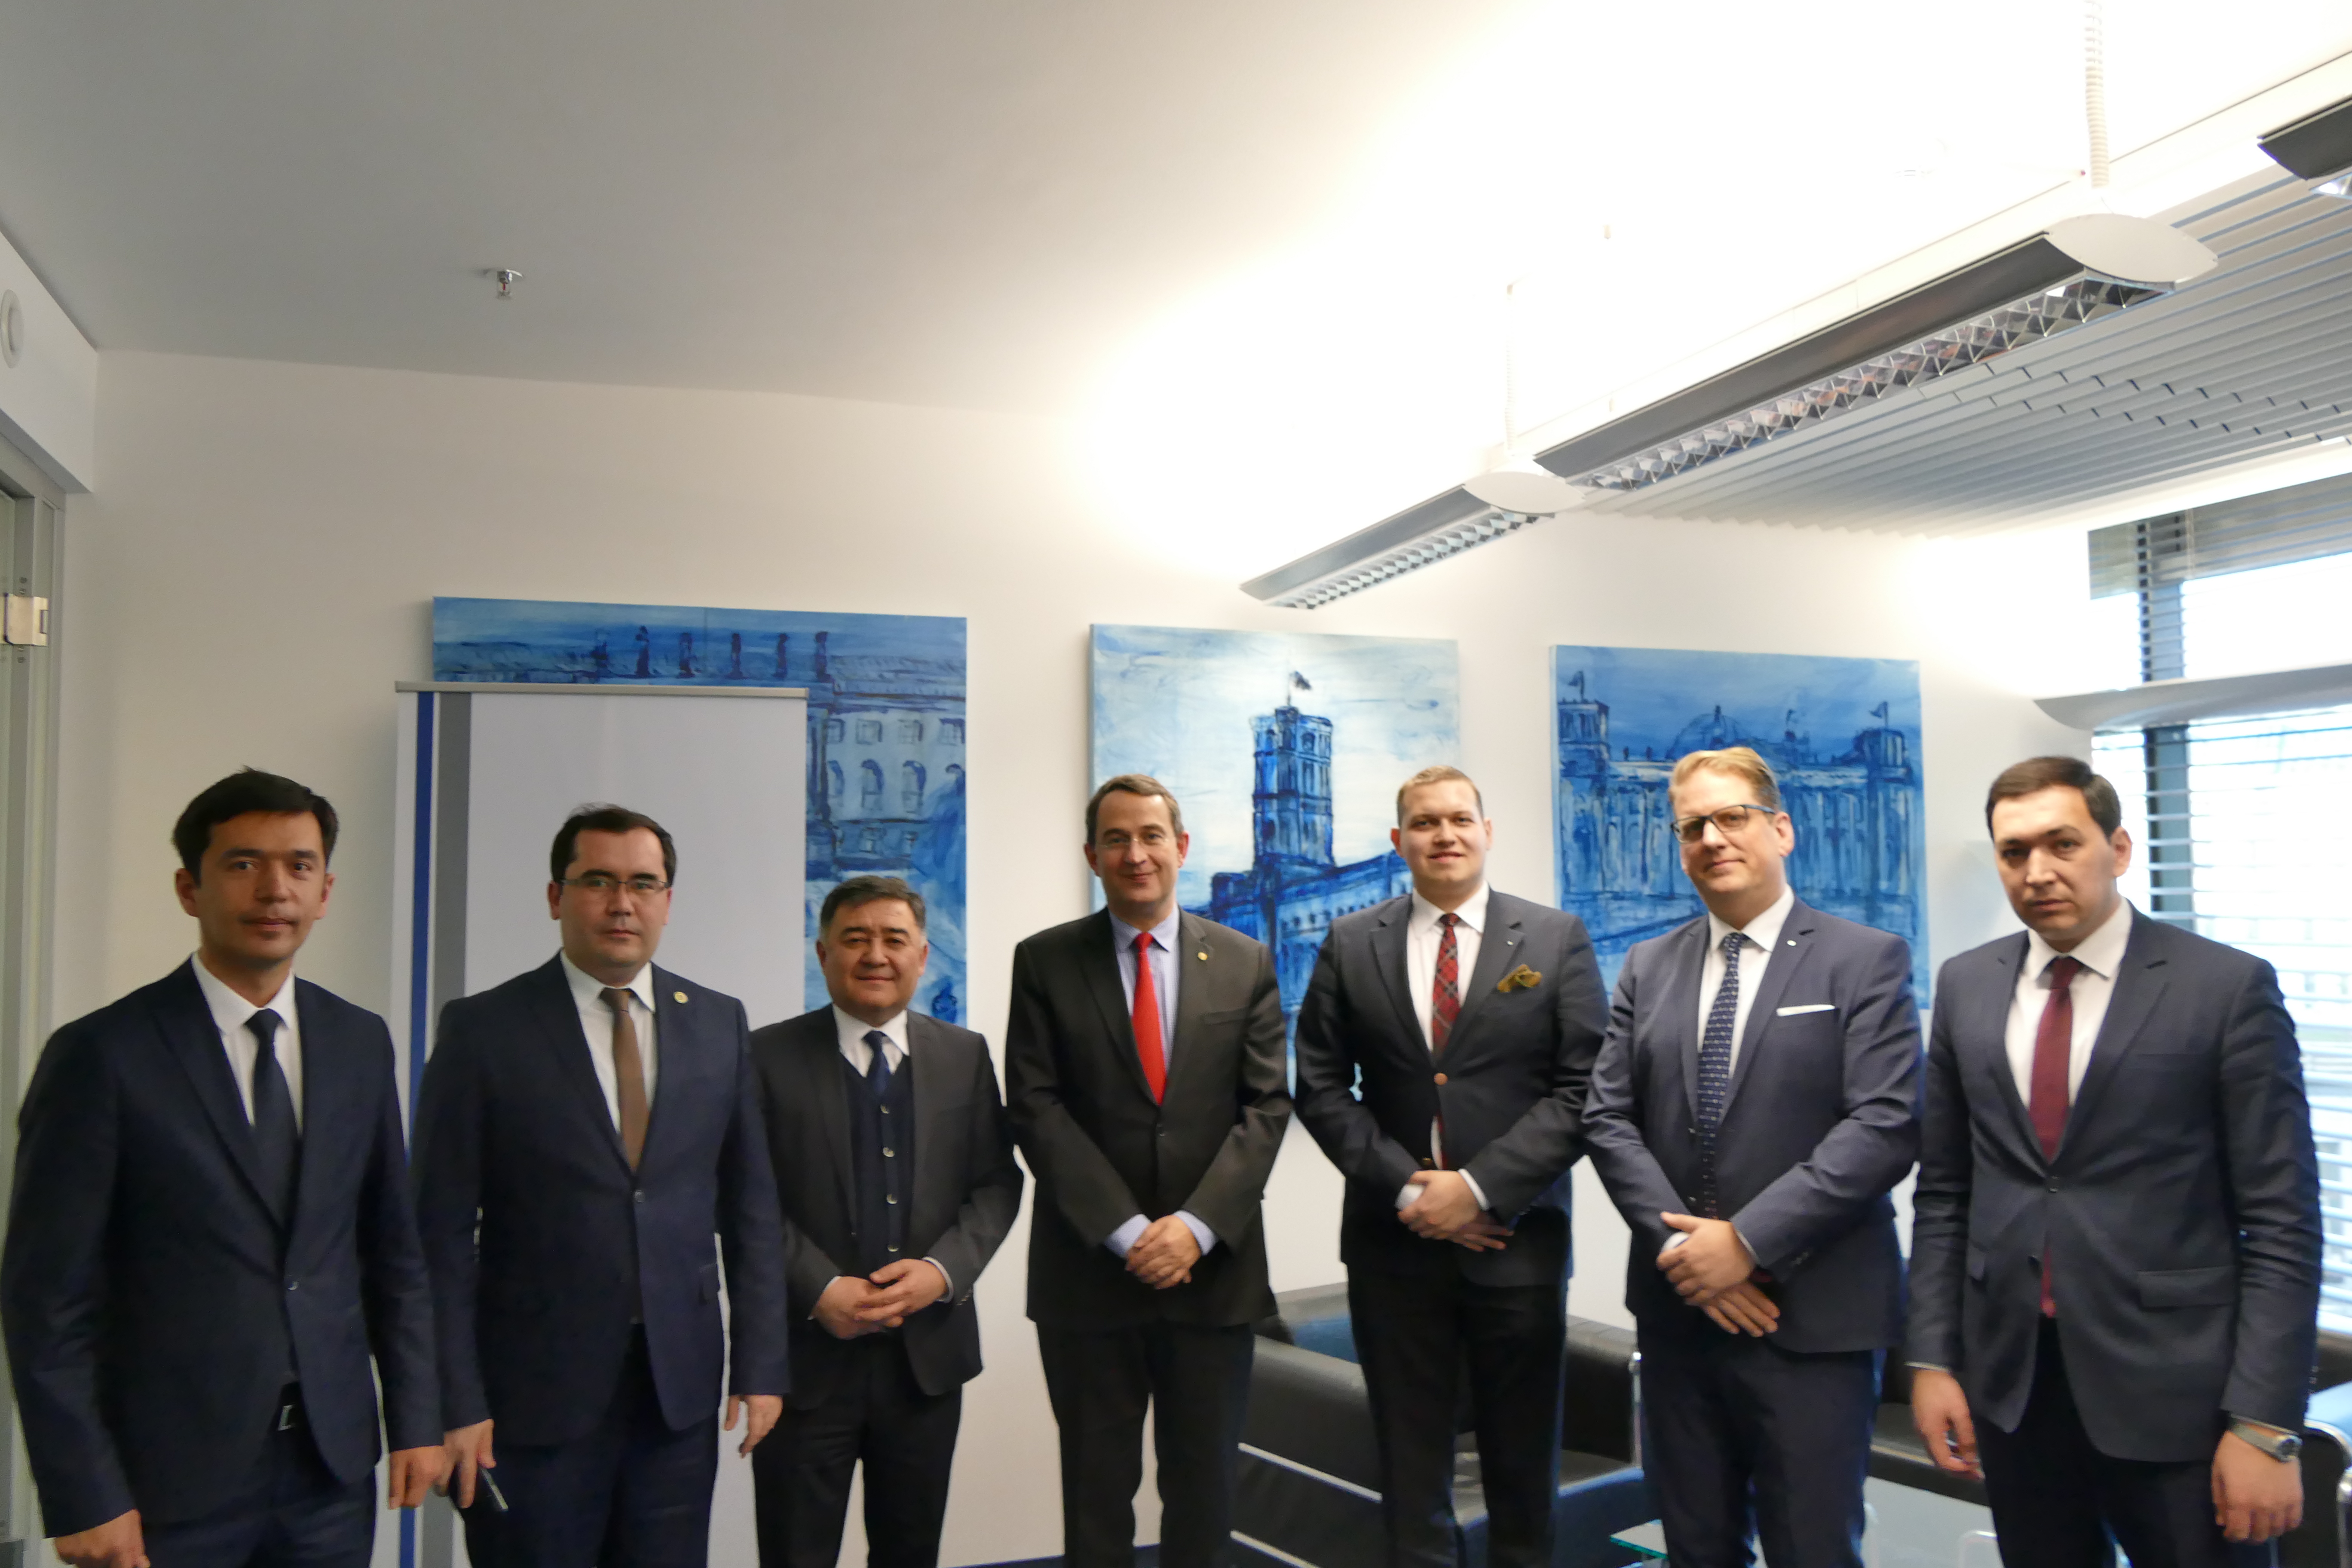 Die Delegation aus Usbekistan zu Besuch beim BWA. Neben dem Vorstandsvorsitzenden Michael Schumann nahmen von Seiten des BWA der Senator und Global Vice President von SAP, Andreas Hube sowie BWA-Diplomatieberater Urs Unkauf an dem Gespräch teil.